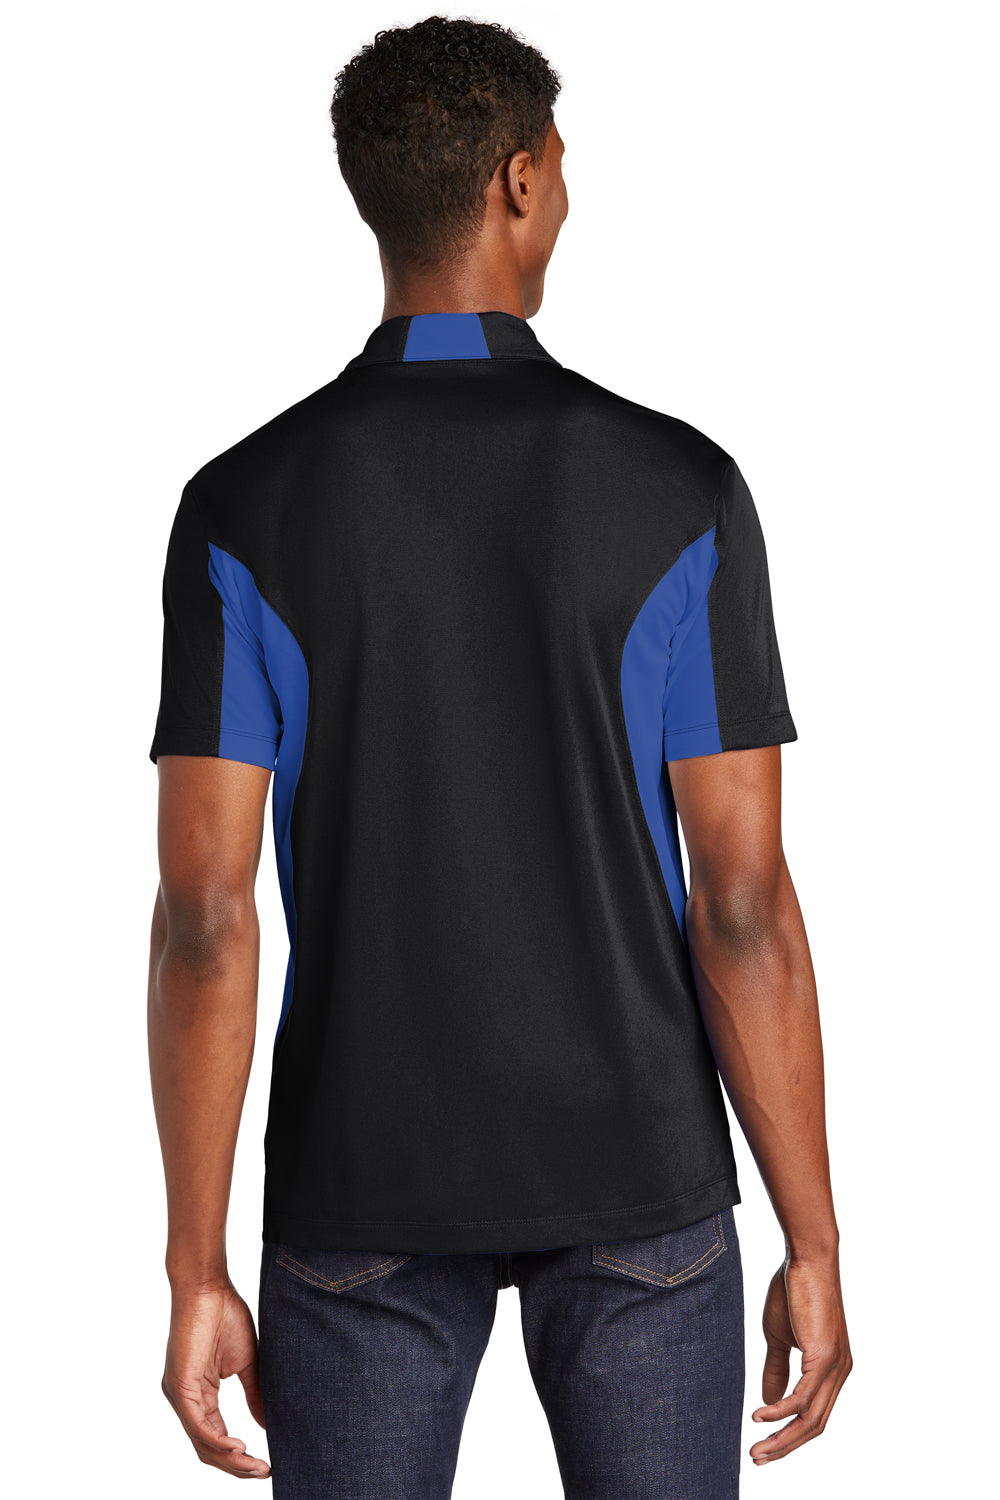 Sport-Tek ST655 Mens Sport-Wick Moisture Wicking Short Sleeve Polo Shirt Black/Royal Blue Back